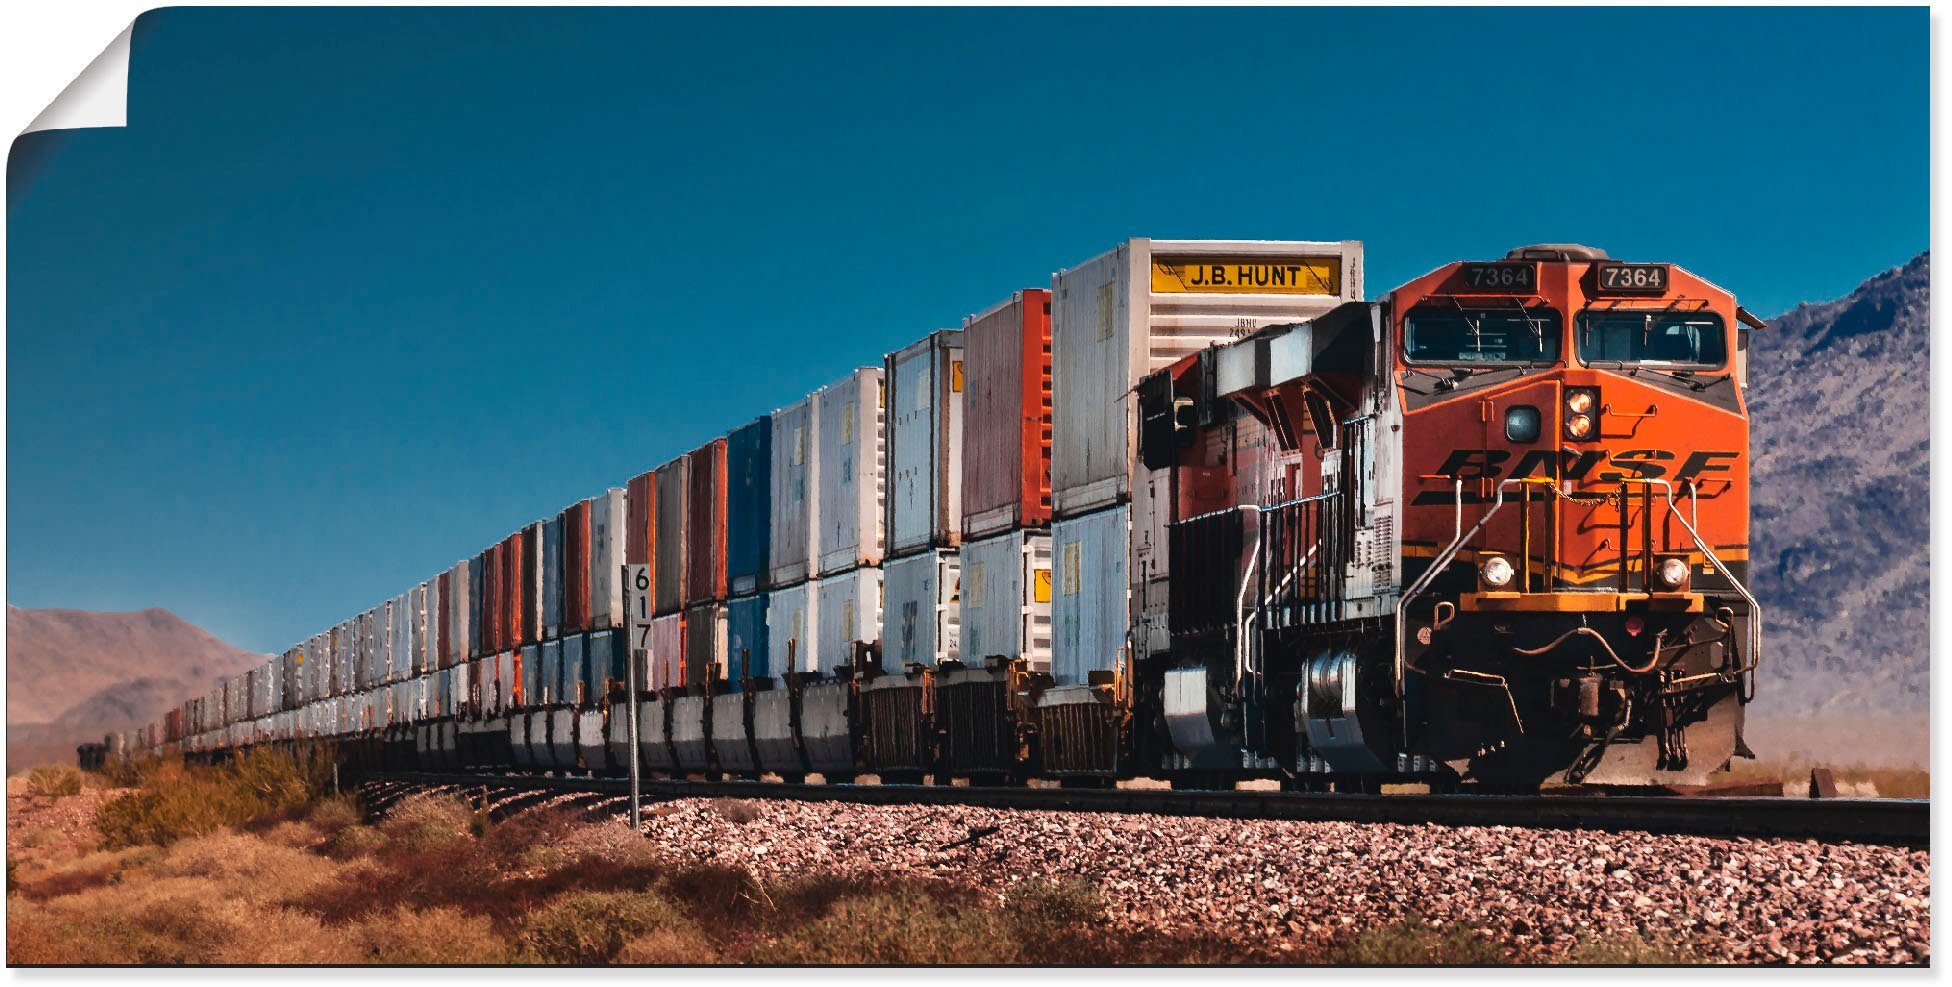 versch. Artland in St), Güterzug Alubild, Wandaufkleber oder Größen Kalifornien, Leinwandbild, als Wandbild BNSF Poster (1 Züge